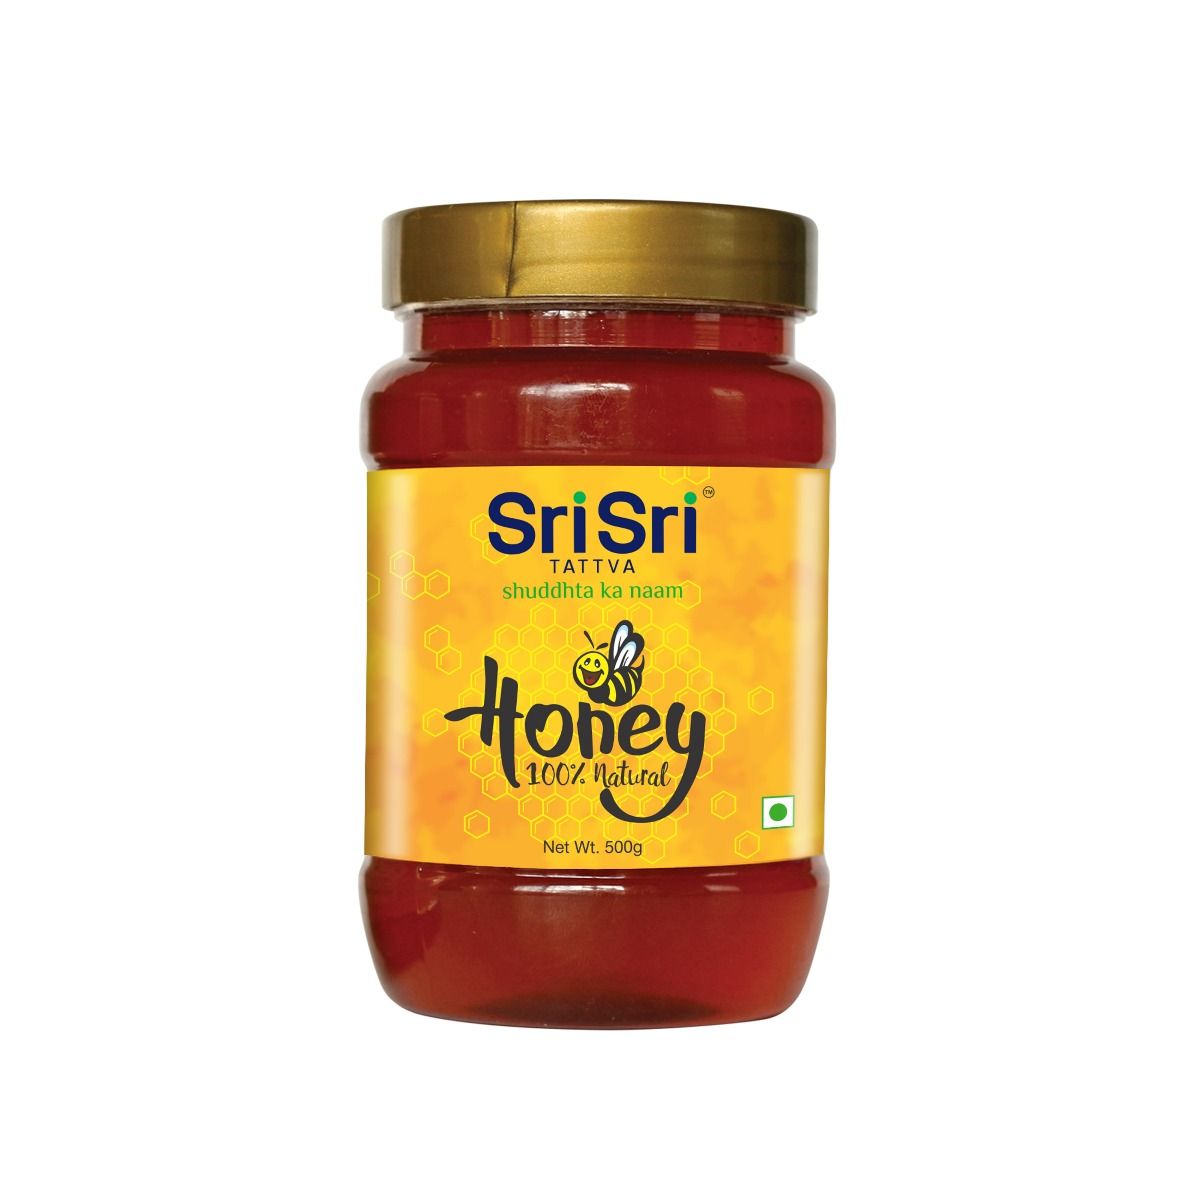 Sri Sri Tattva Honey - 100% Natural, 500 gm, Pack of 1 